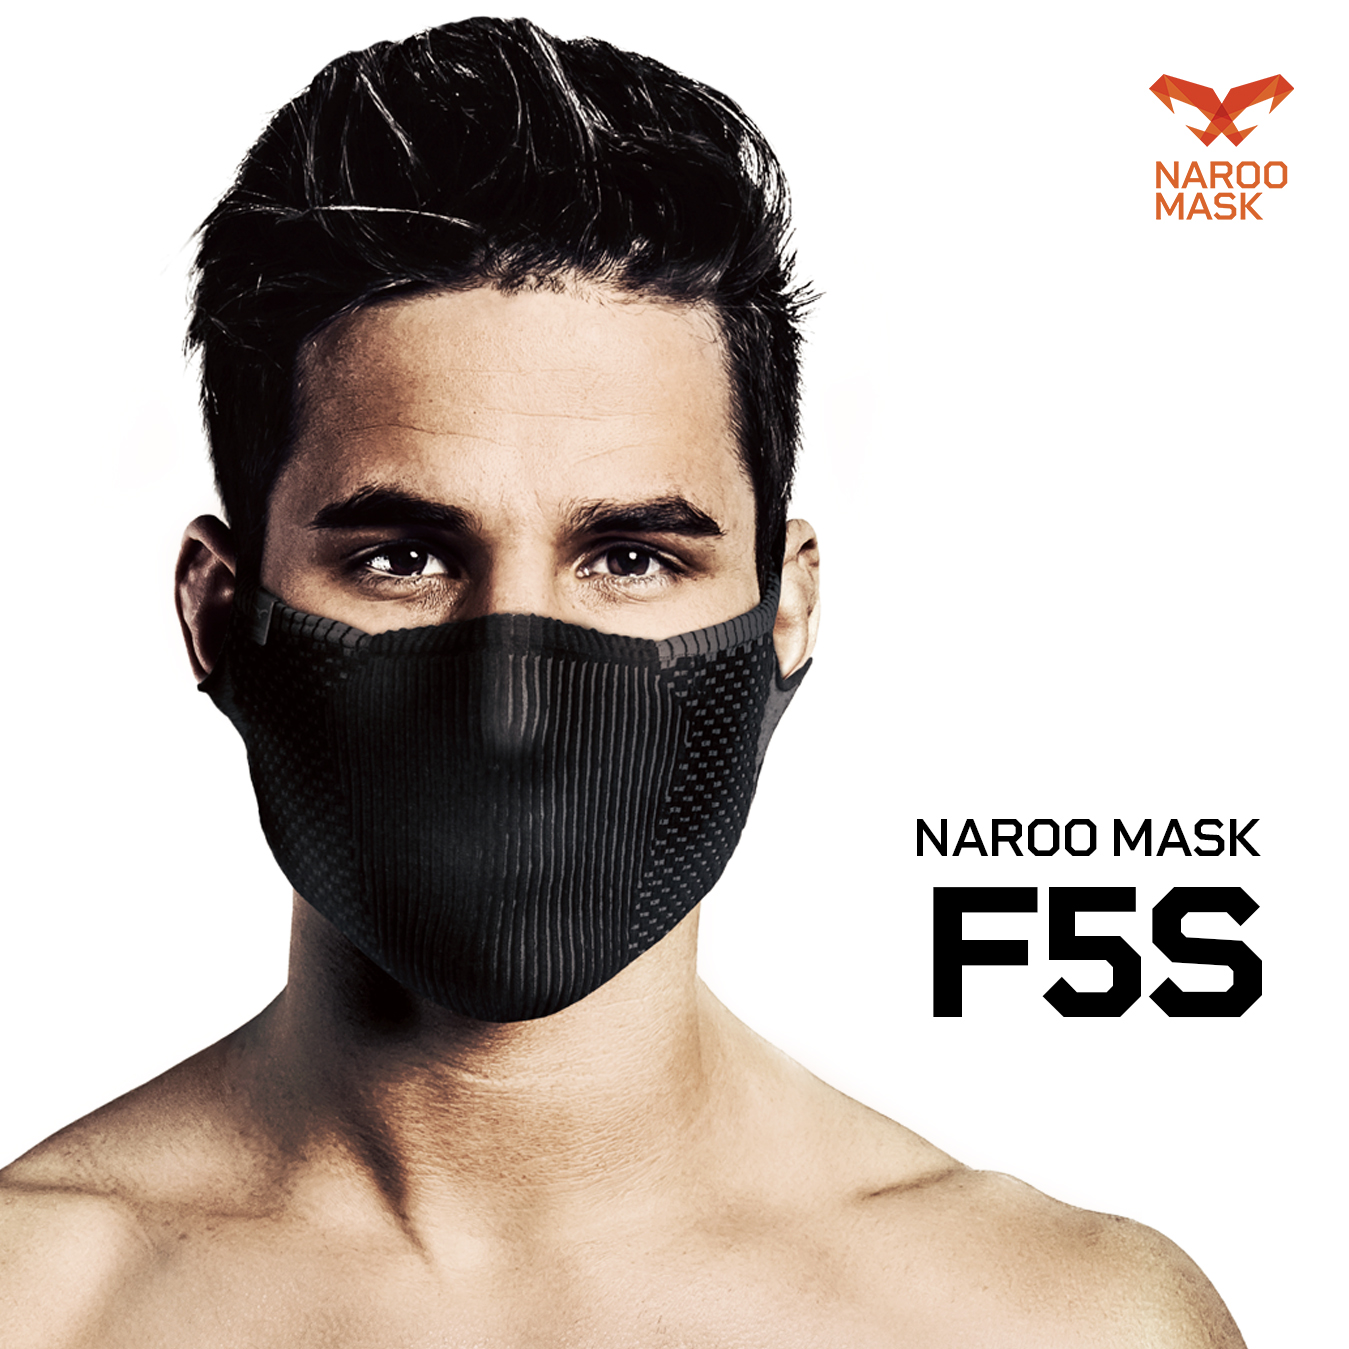 鼻の部分にフレームが入っているので 顔とマスクの密着度が高く 空気中のホコリを効果的にフィルター ランニング ゴルフ フィッシング サイクリング等のアウトドアスポーツマスク 花粉対応スポーツマスク用 スポーツマスク サイクリングマスク ランニングマスク NAROO MASK 洗って繰り返し使える 日焼け防止 定番 テニス 新品 苦しくない 速乾性 ナルーマスク F5s 男女兼用 やわらか フリーサイズ UVカット 高機能フィルター